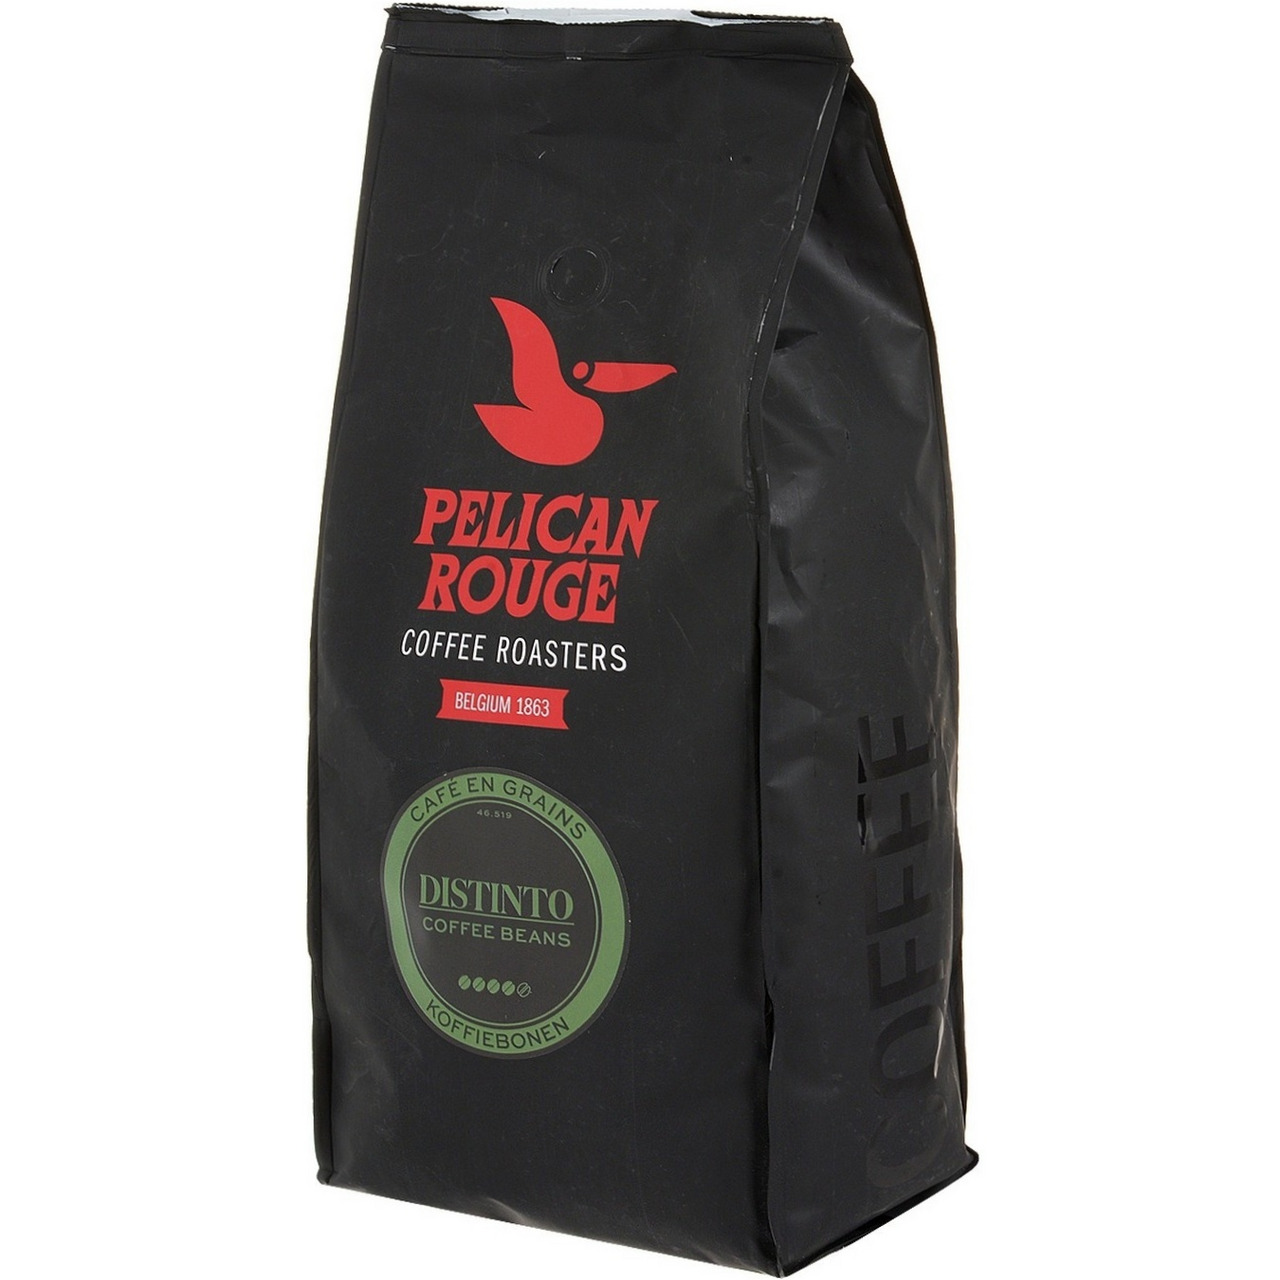 Кофе в зернах 1 кг для кофемашин. Pelican rouge кофе в зернах. Кофе в зернах Pelican rouge distinto. Кофе в зернах Pelican rouge "distinto" 1 кг. Кофе в зернах Pelican rouge Orfeo.